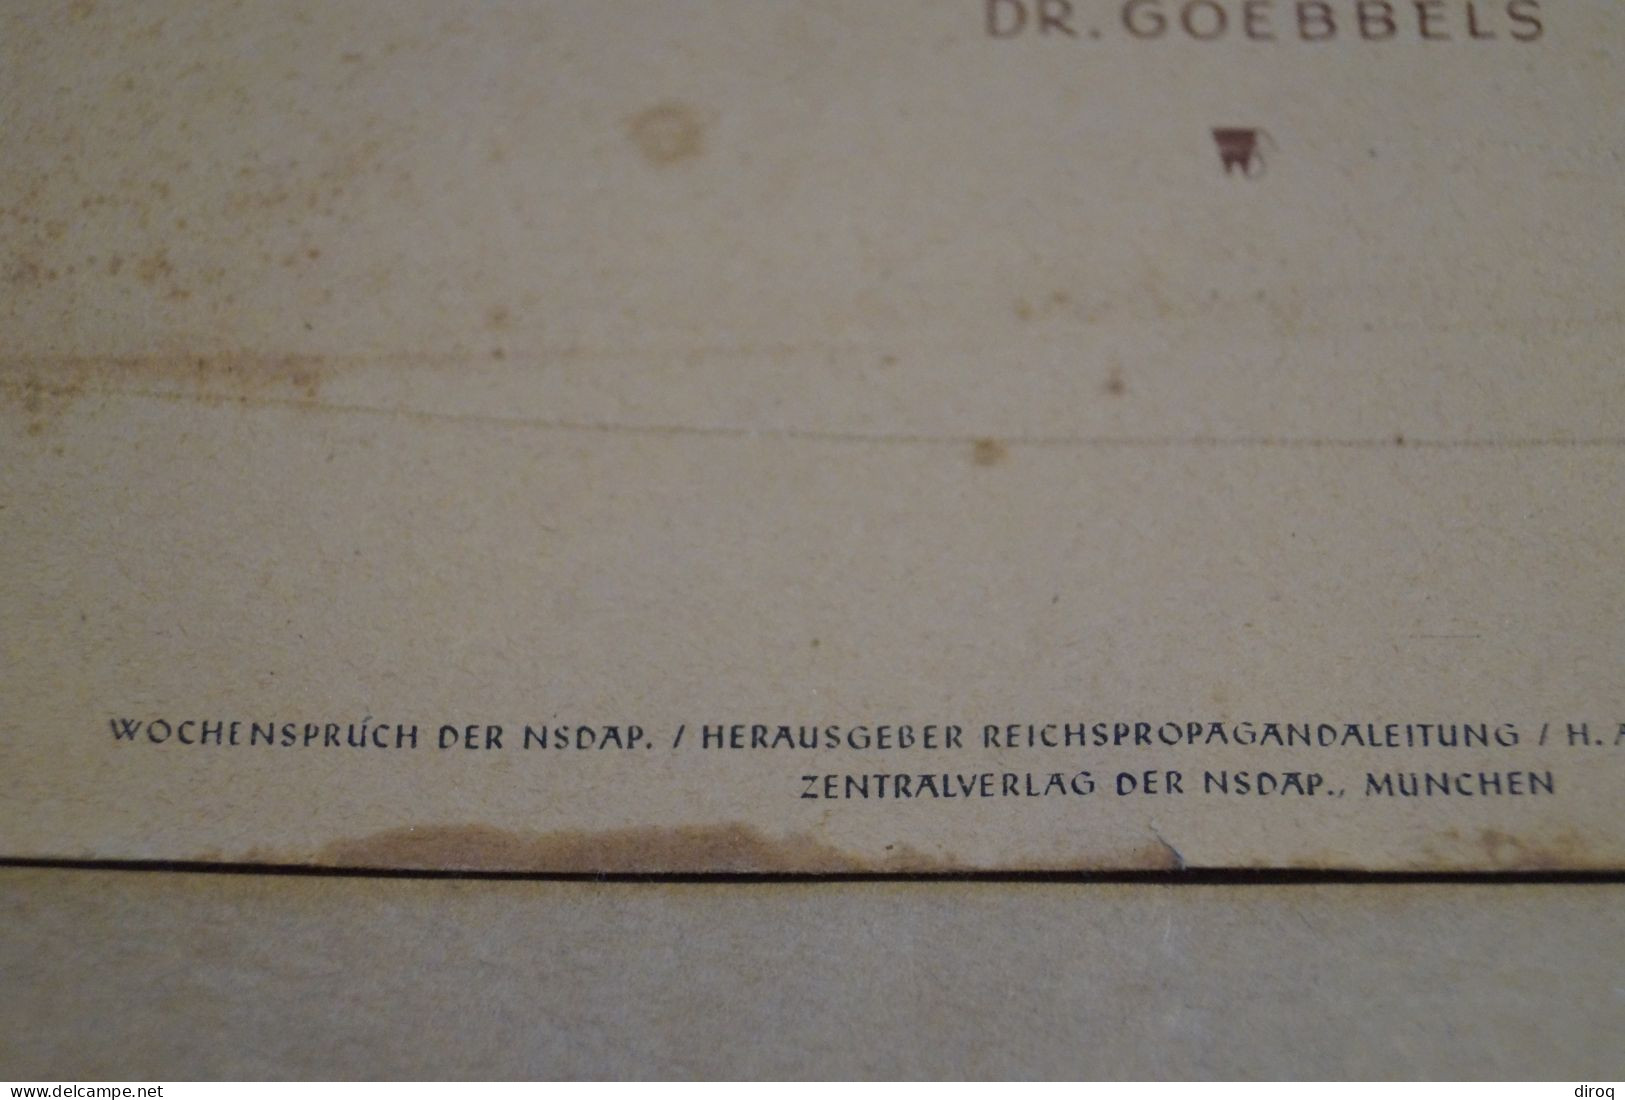 Grande Affiche De Propagande Allemande Guerre 40-45,Dr. Goebbels,originale,RARE,350 Mm./240 Mm - Plakate